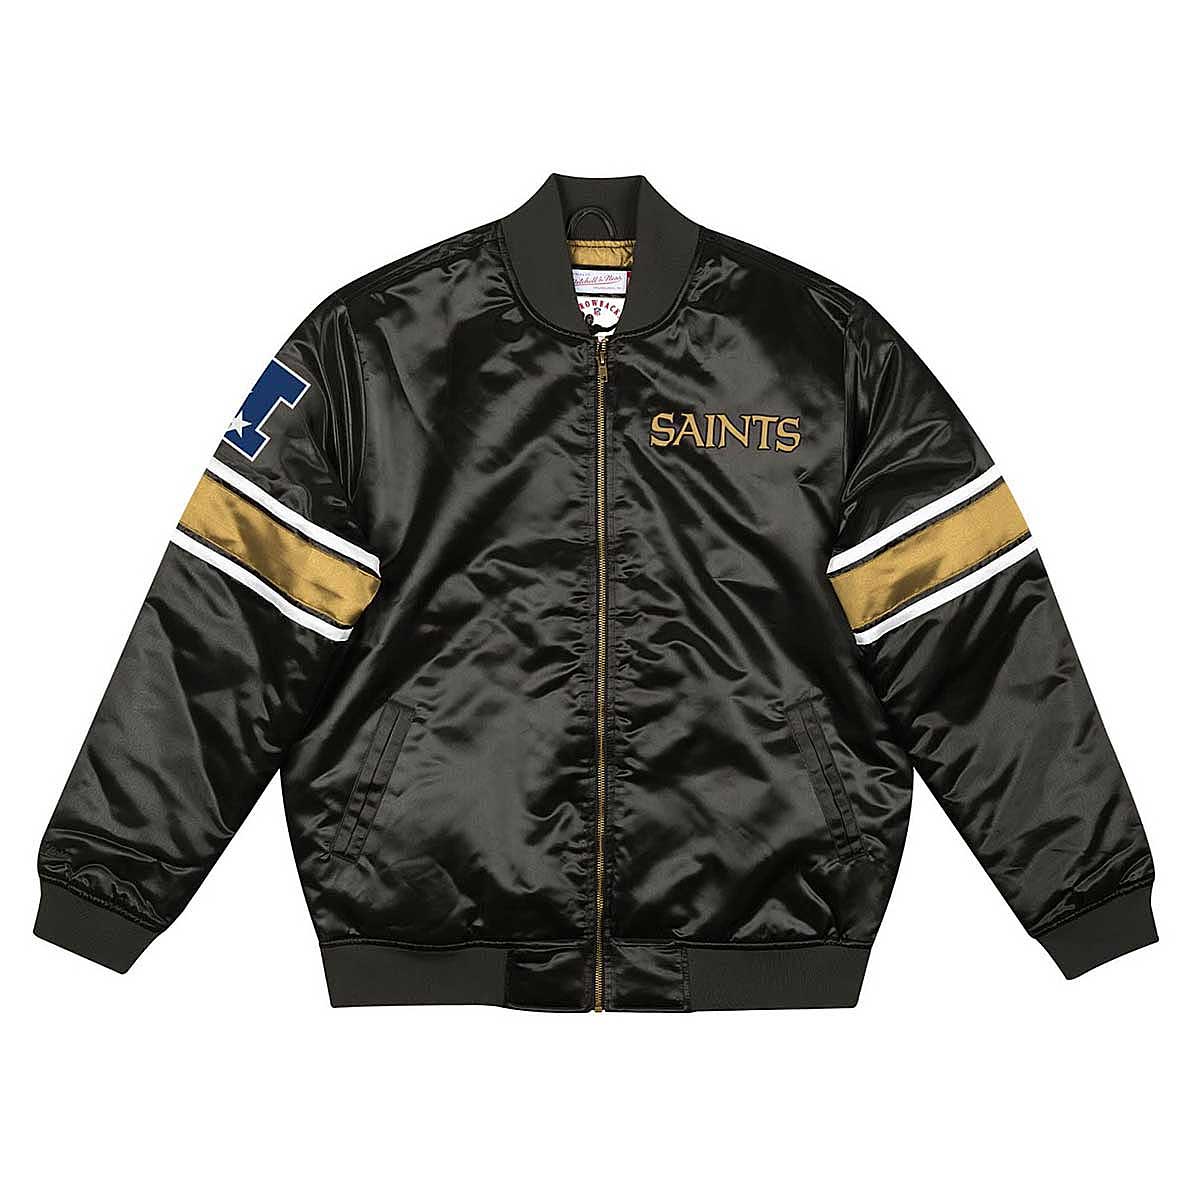 Bomber Jackets New Era New Orleans Saints NFL Satin Bomber Jacket